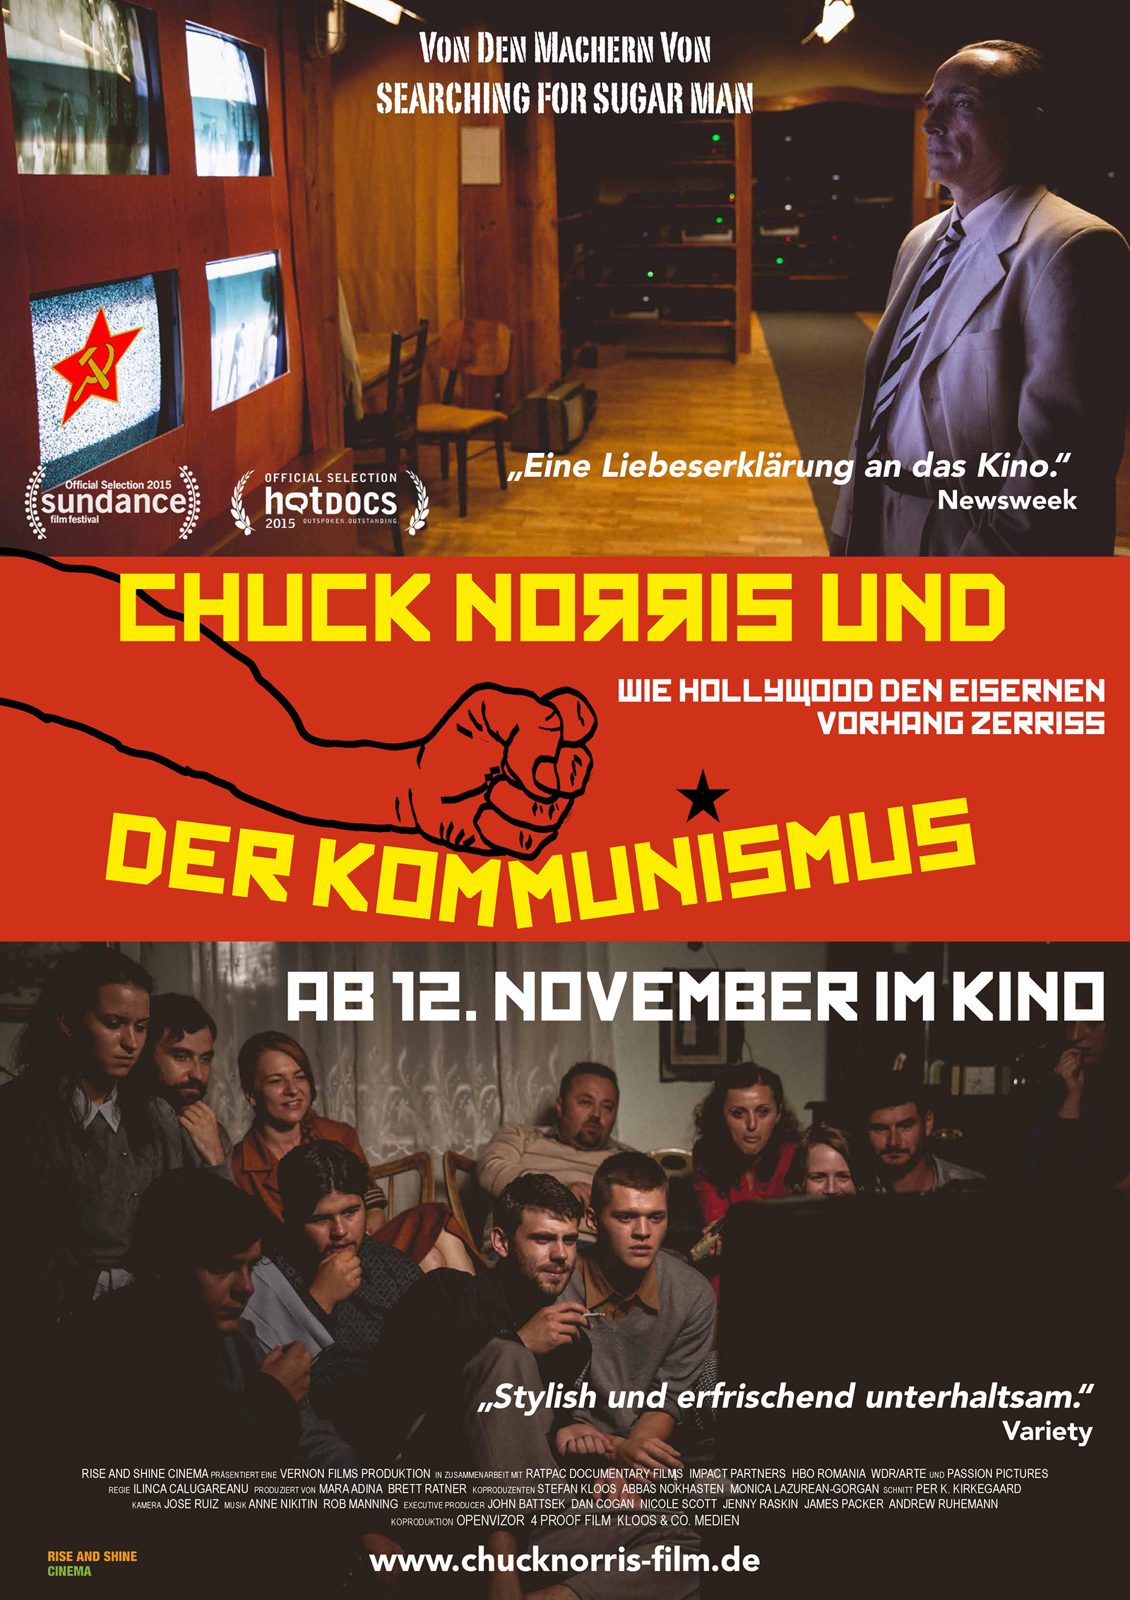 Chuck Norris und der Kommunismus | Film-Rezensionen.de